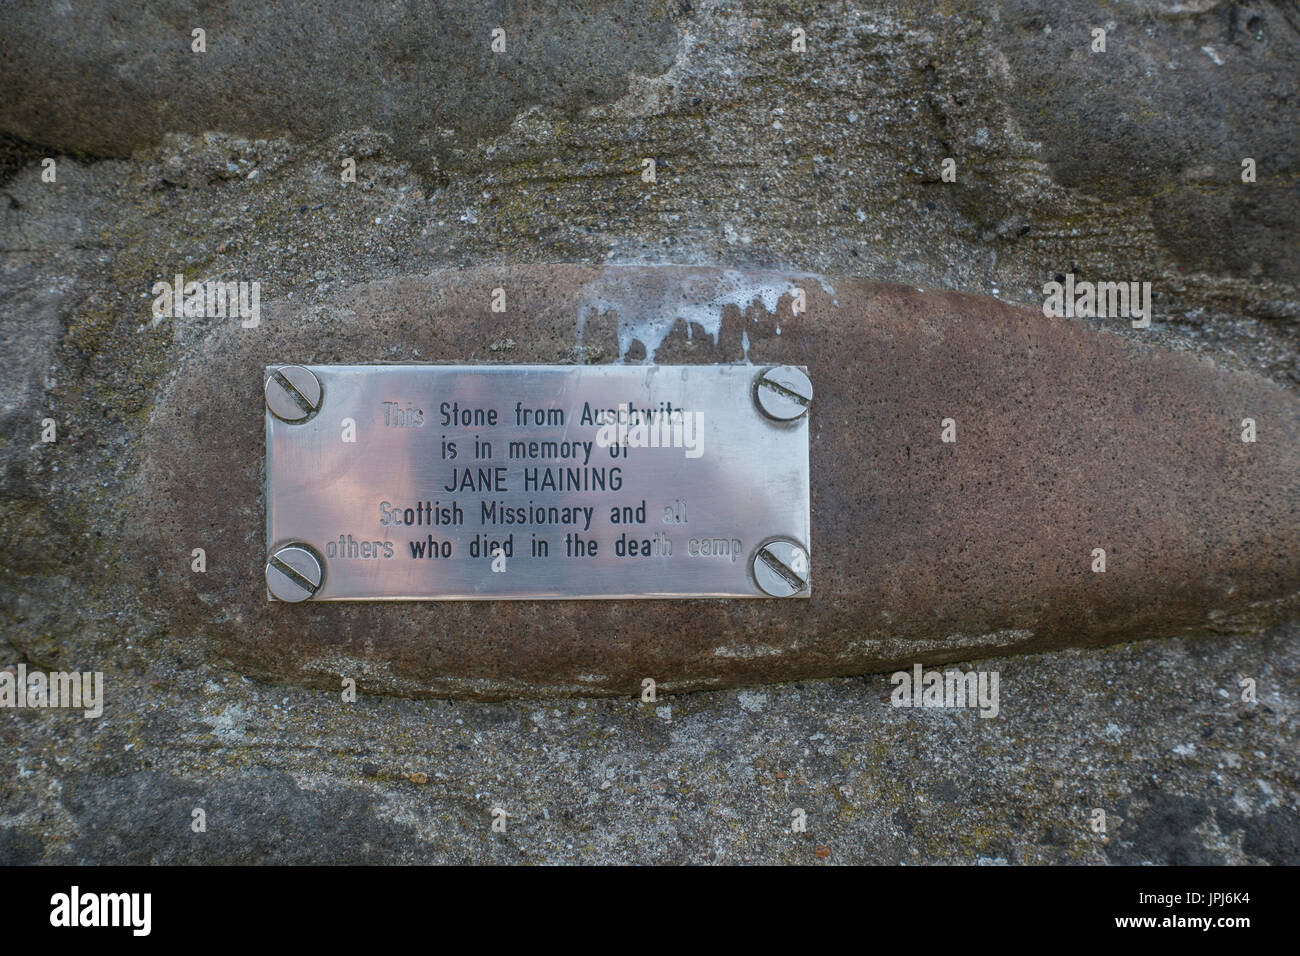 Une pierre d'Auschwitz en mémoire de Jane Haining sur le Cairn au Calton Hill Edinburgh Scotland, un missionnaire écossais à Budapest Hongrie Banque D'Images